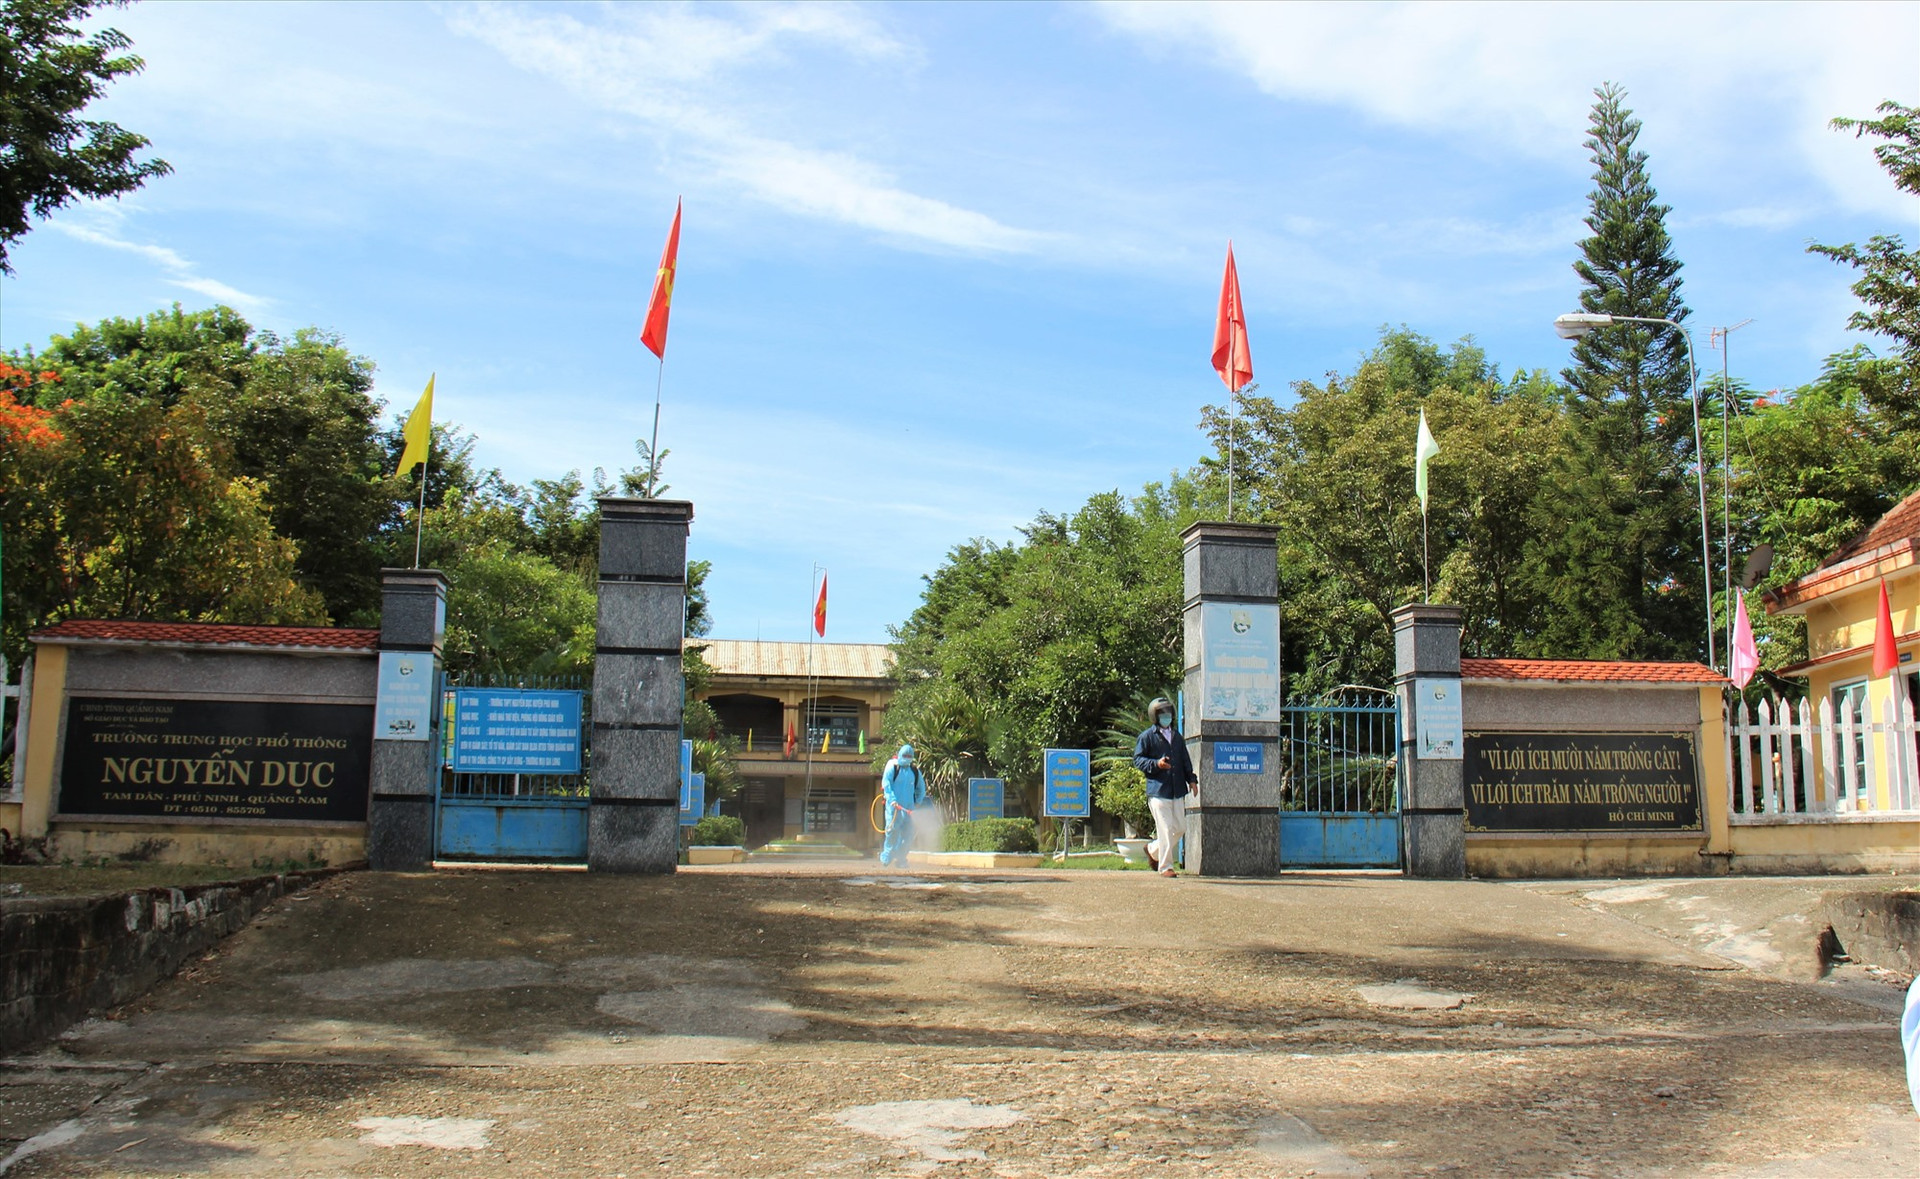 Trường THPT Nguyễn Dục. Ảnh: THANH THẮNG